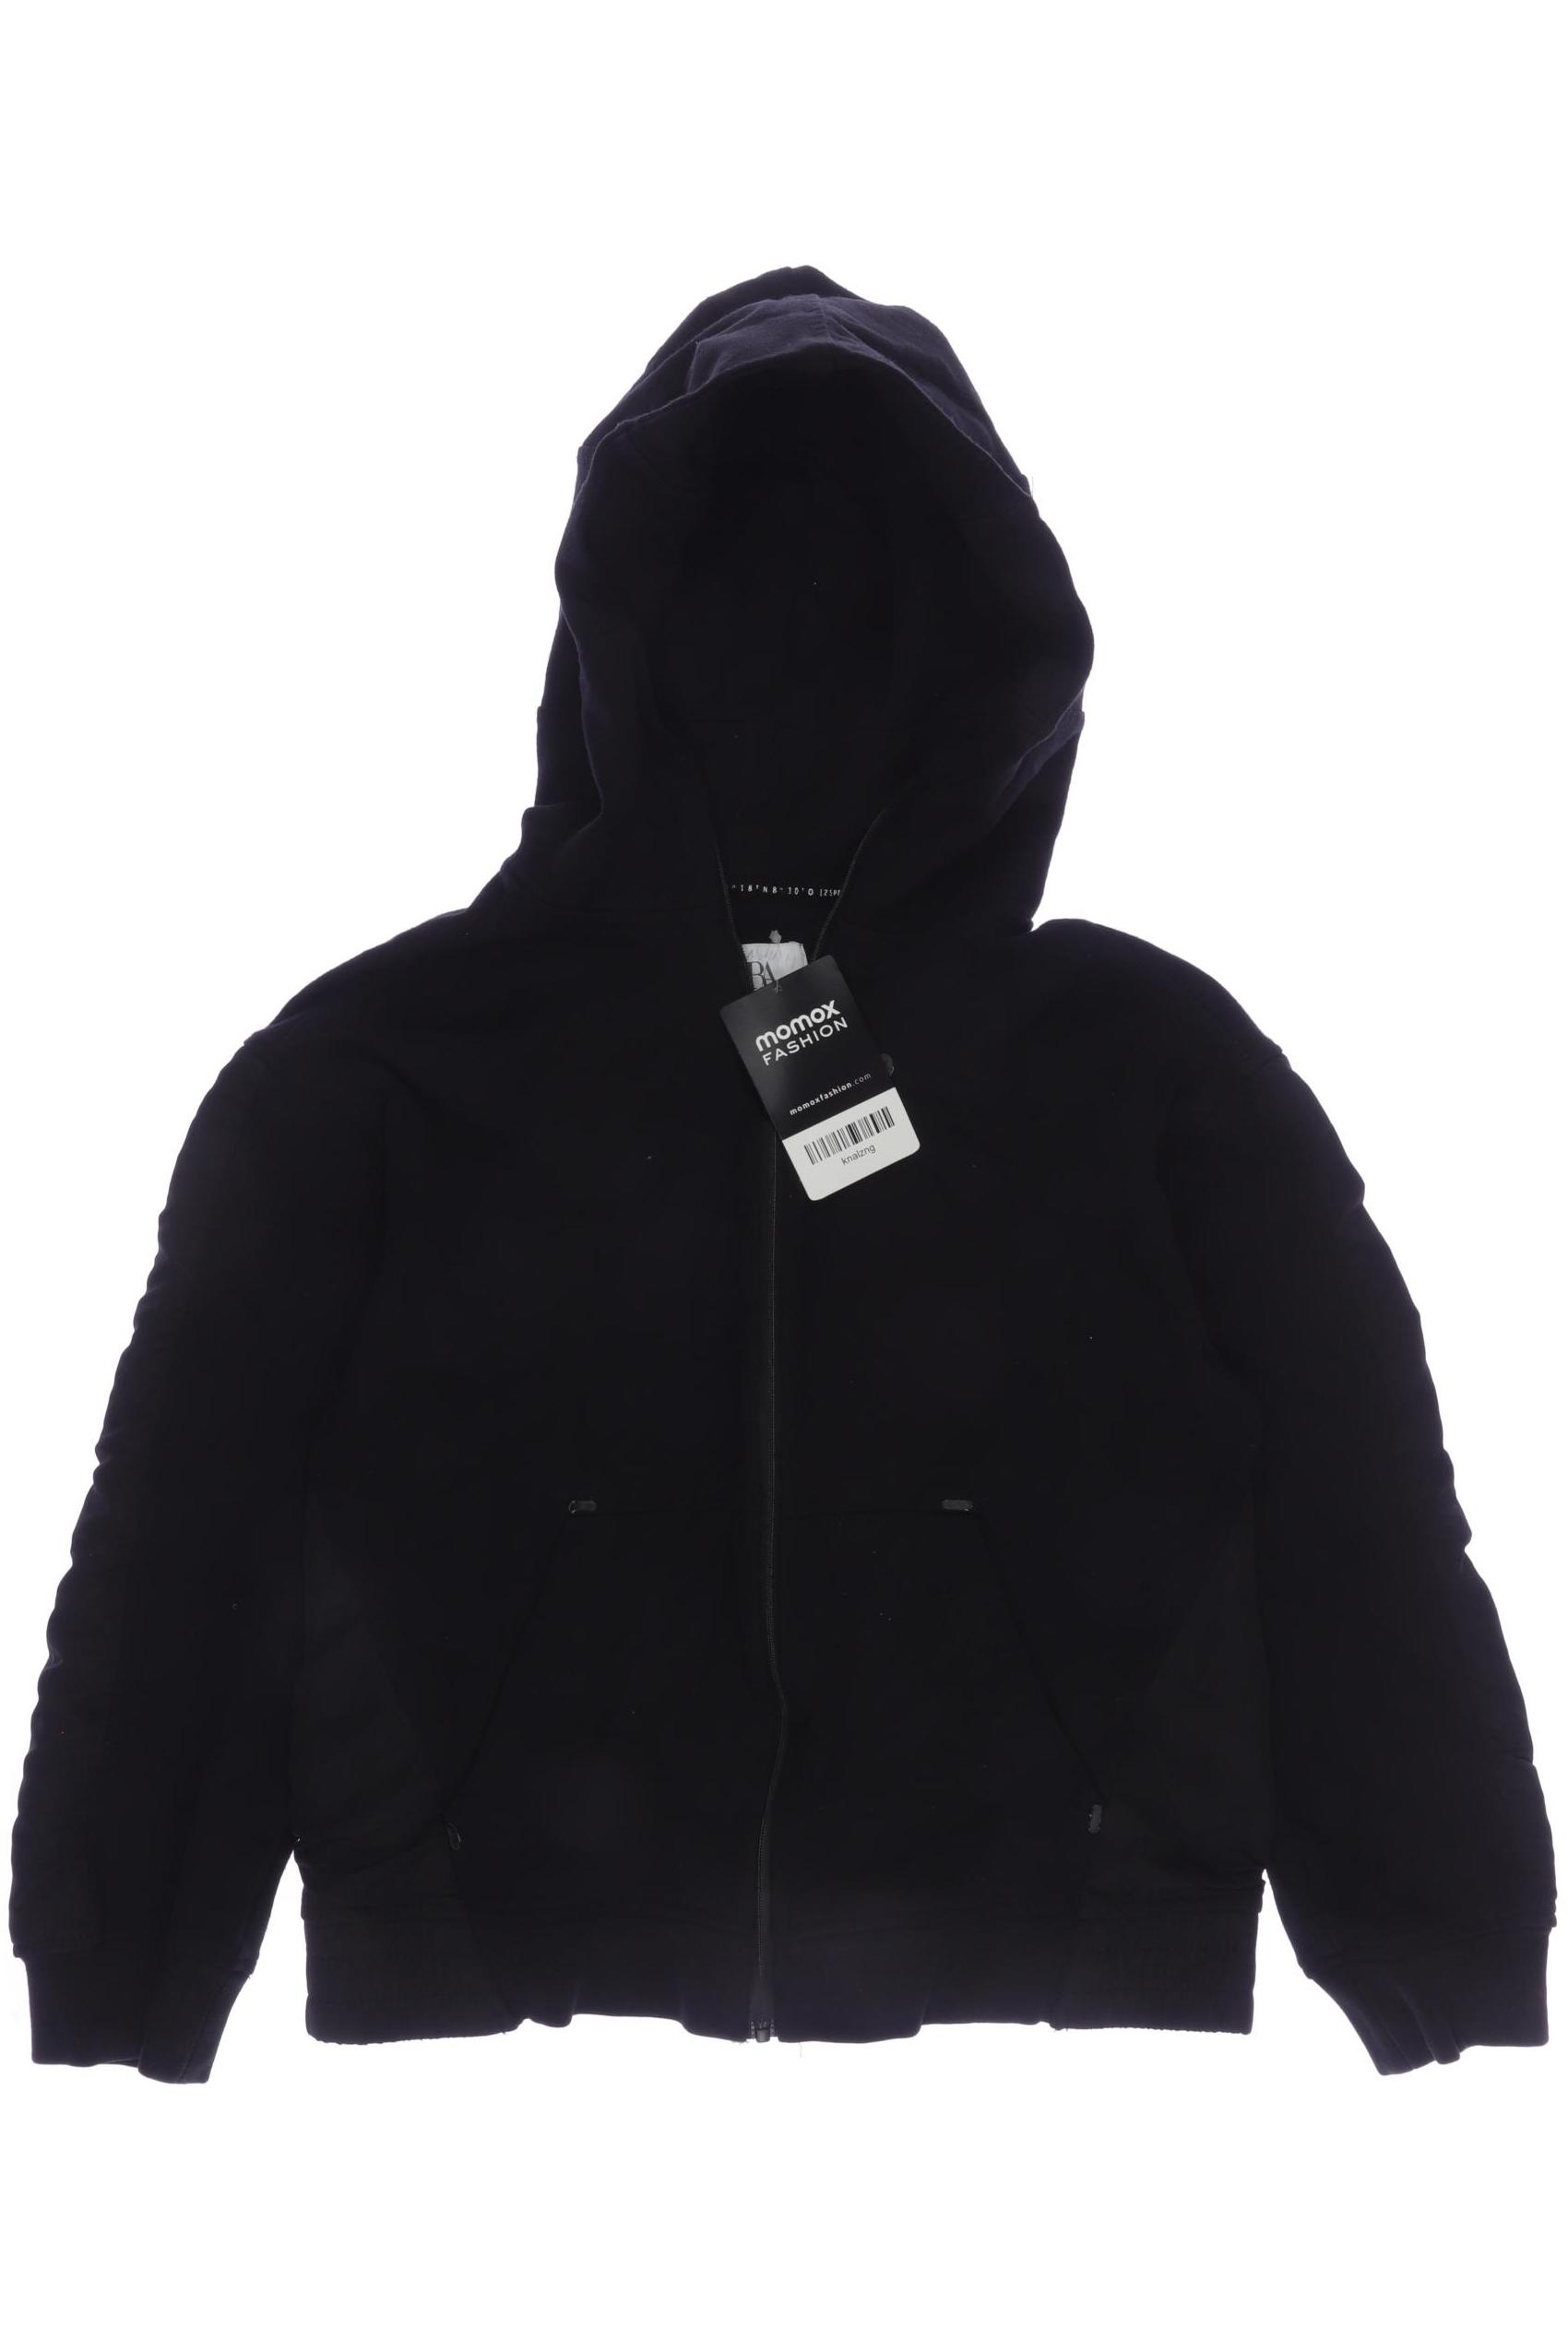 Zara Damen Jacke, schwarz, Gr. 128 von ZARA